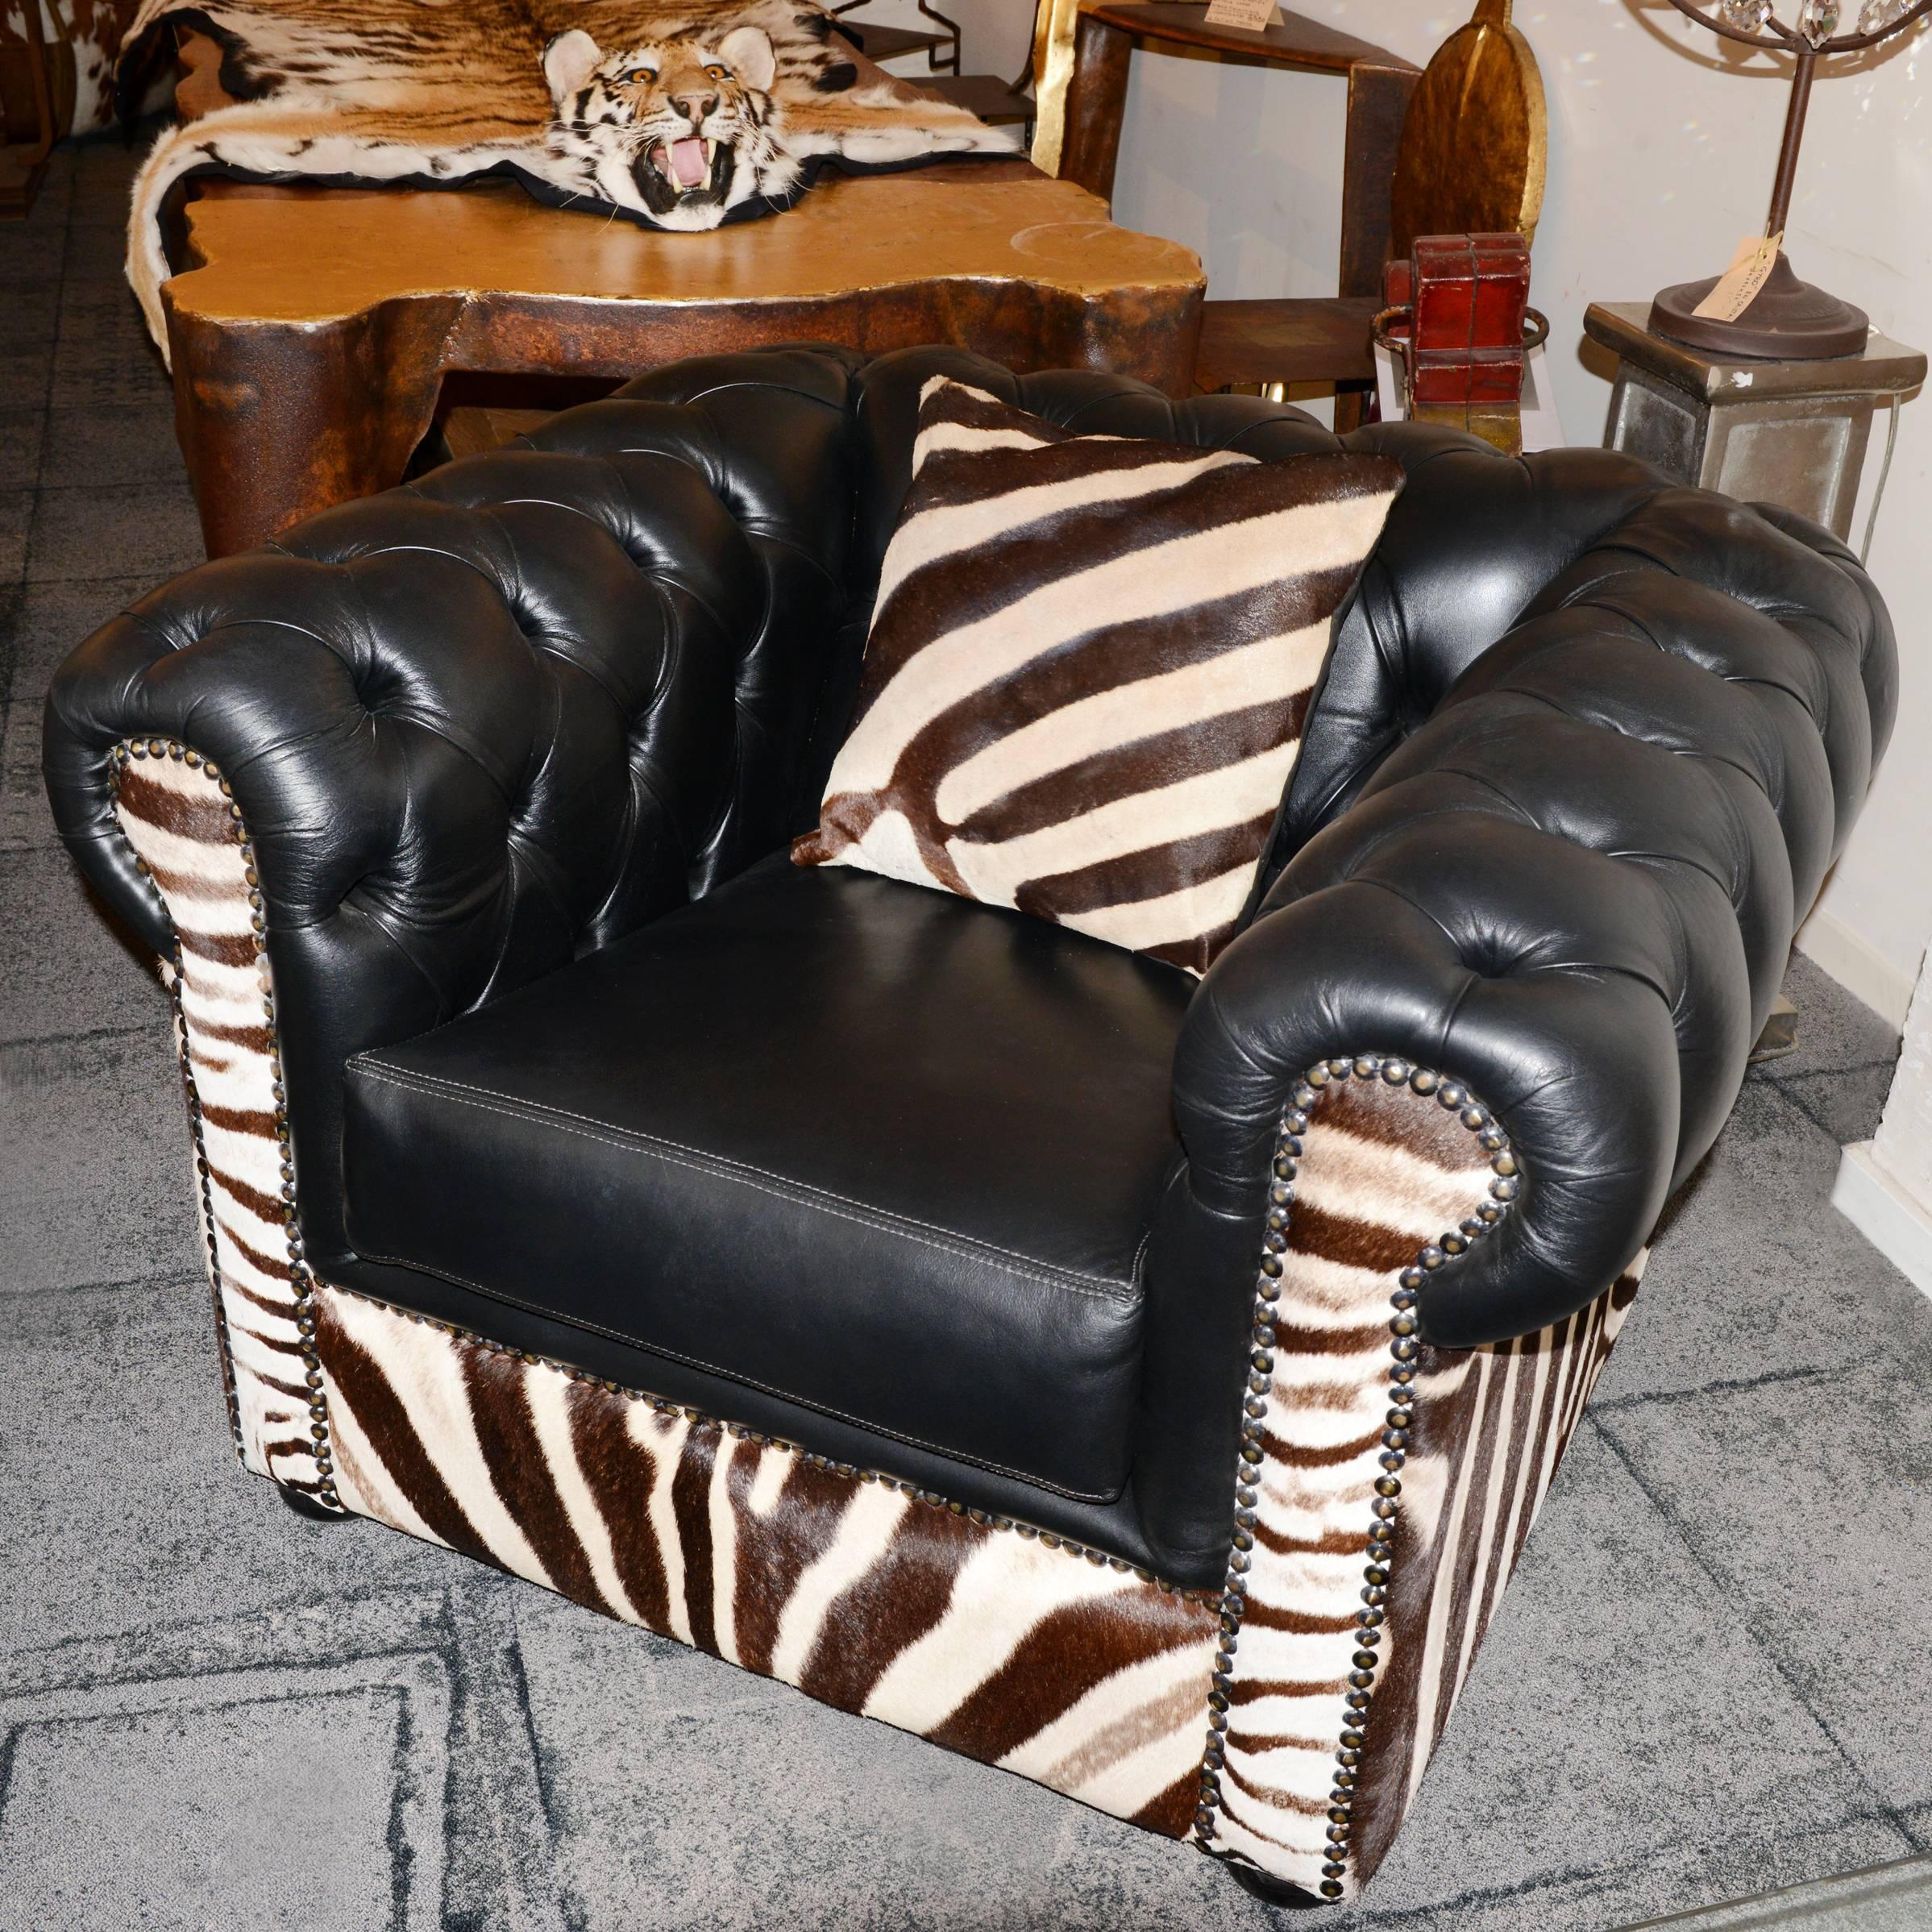 Zèbre en fauteuil avec une véritable peau de zèbre d'Afrique du Sud,
travail artisanal avec du cuir véritable noir.
Coussin inclus, en véritable peau de zèbre,
L 38 x 39 cm (prix : 440,00€).
Pièce exceptionnelle fabriquée en France.
